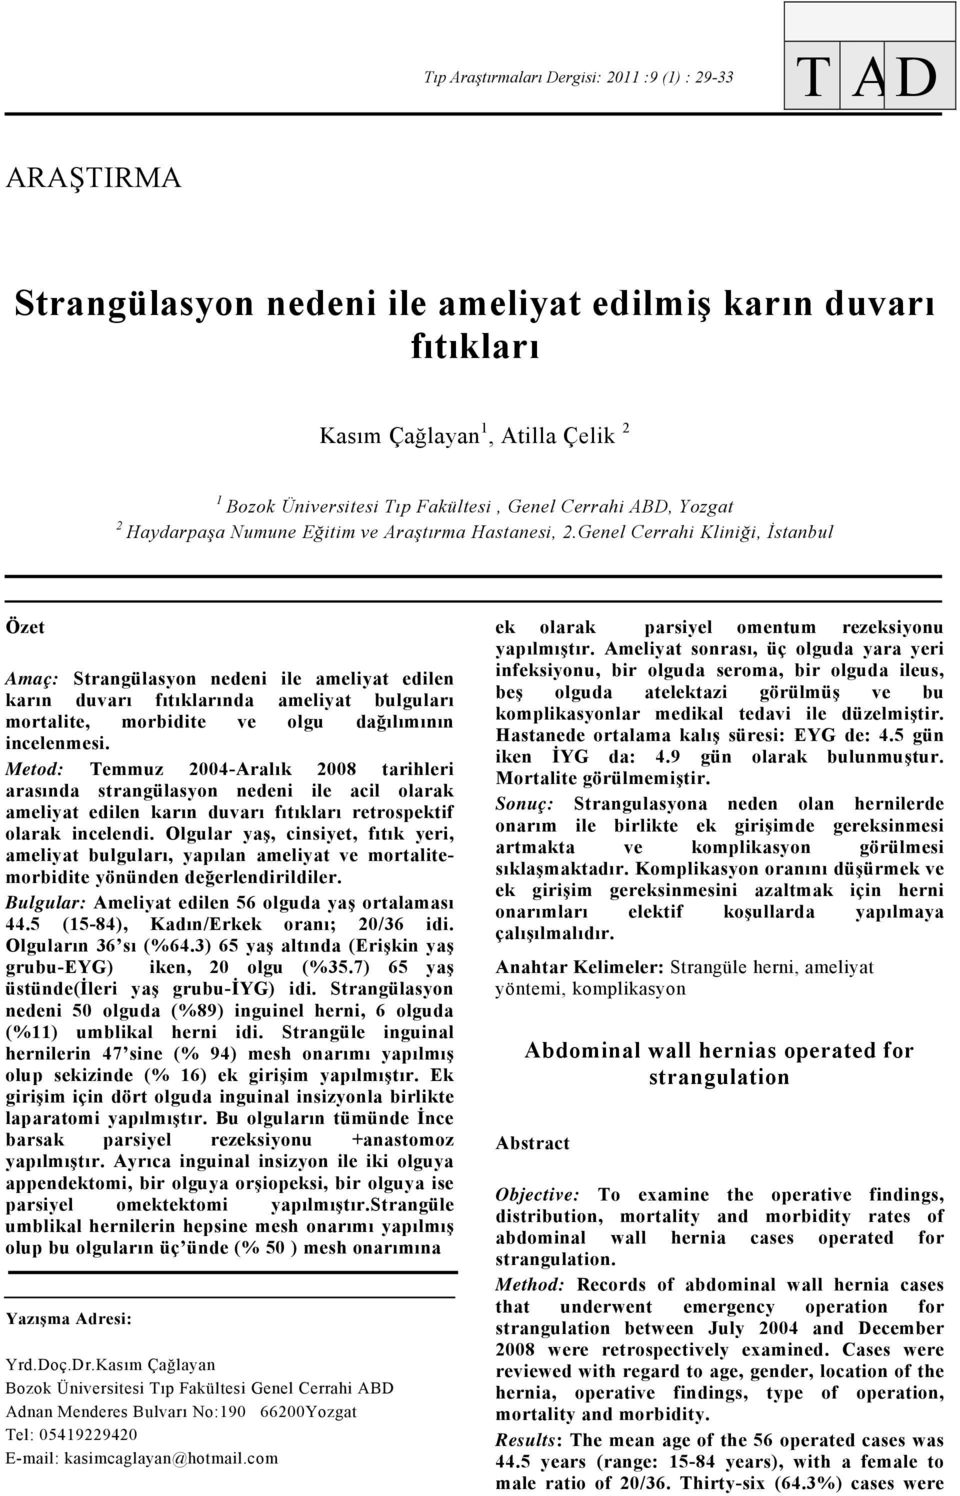 Genel Cerrahi Kliniği, İstanbul Özet Amaç: Strangülasyon nedeni ile ameliyat edilen karın duvarı fıtıklarında ameliyat bulguları mortalite, morbidite ve olgu dağılımının incelenmesi.